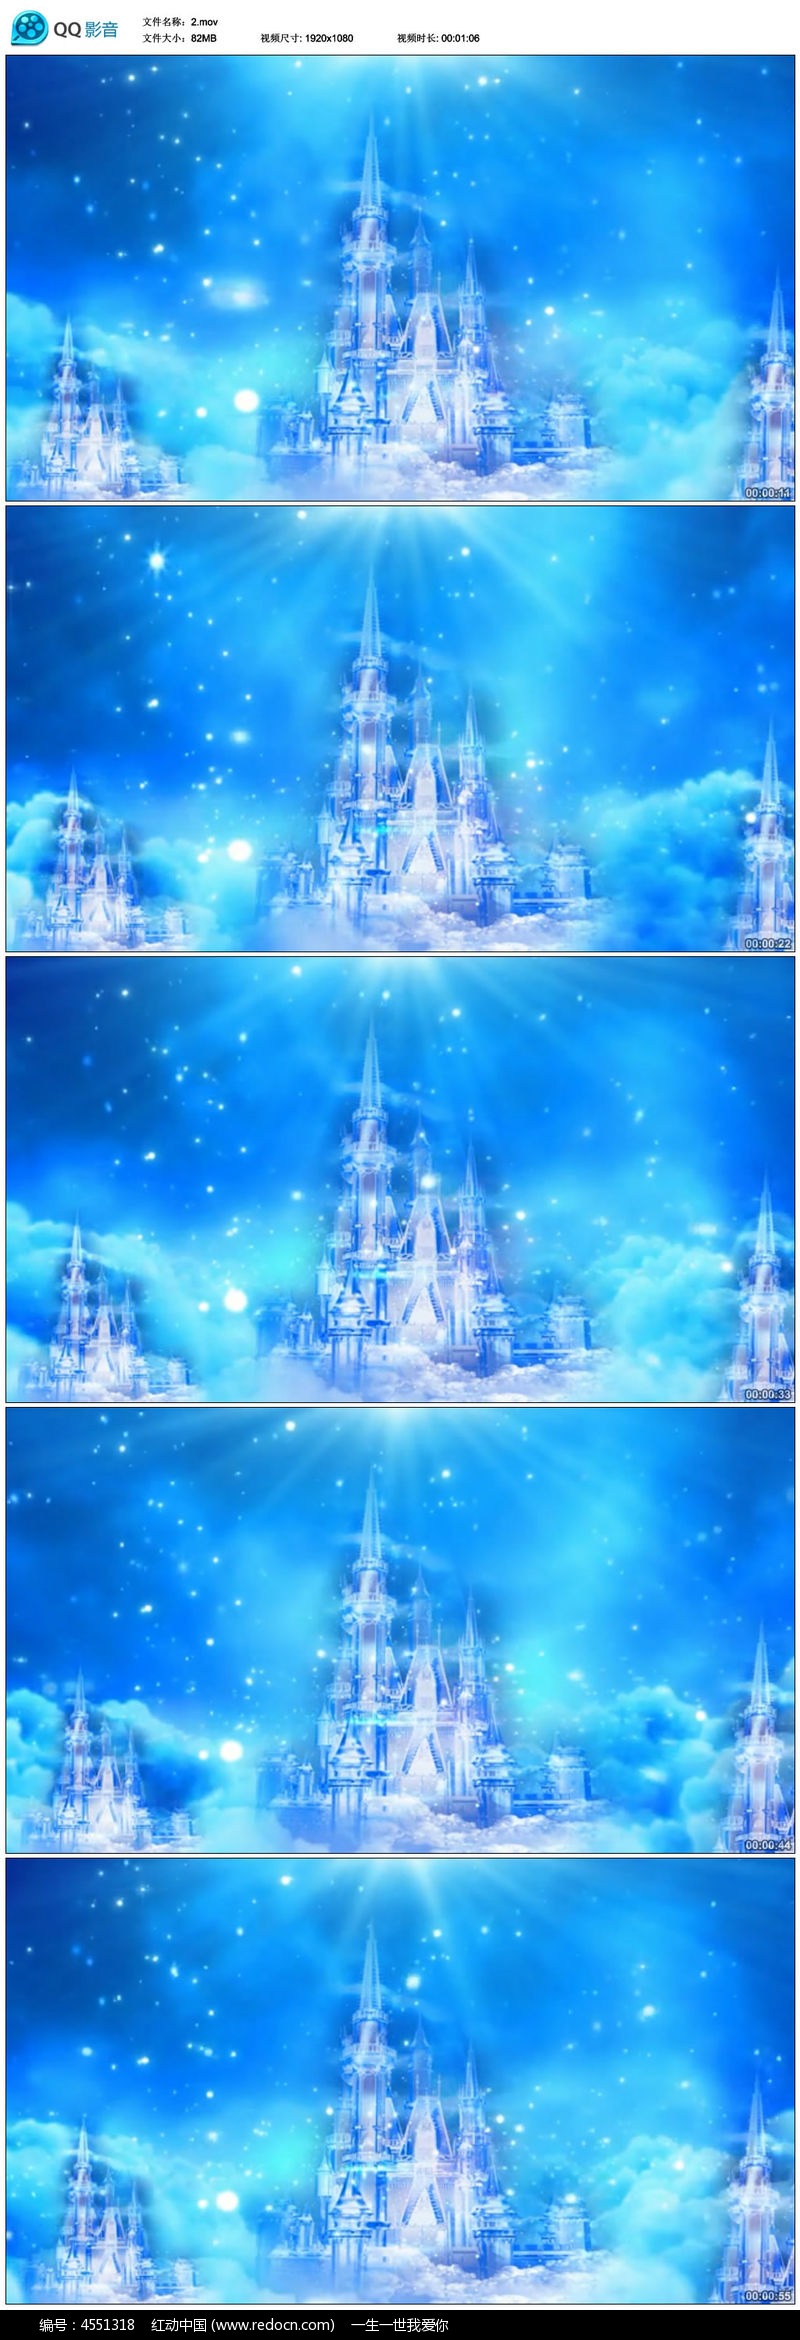 浪漫水晶城堡冰雪奇缘雪花led背景视频素材